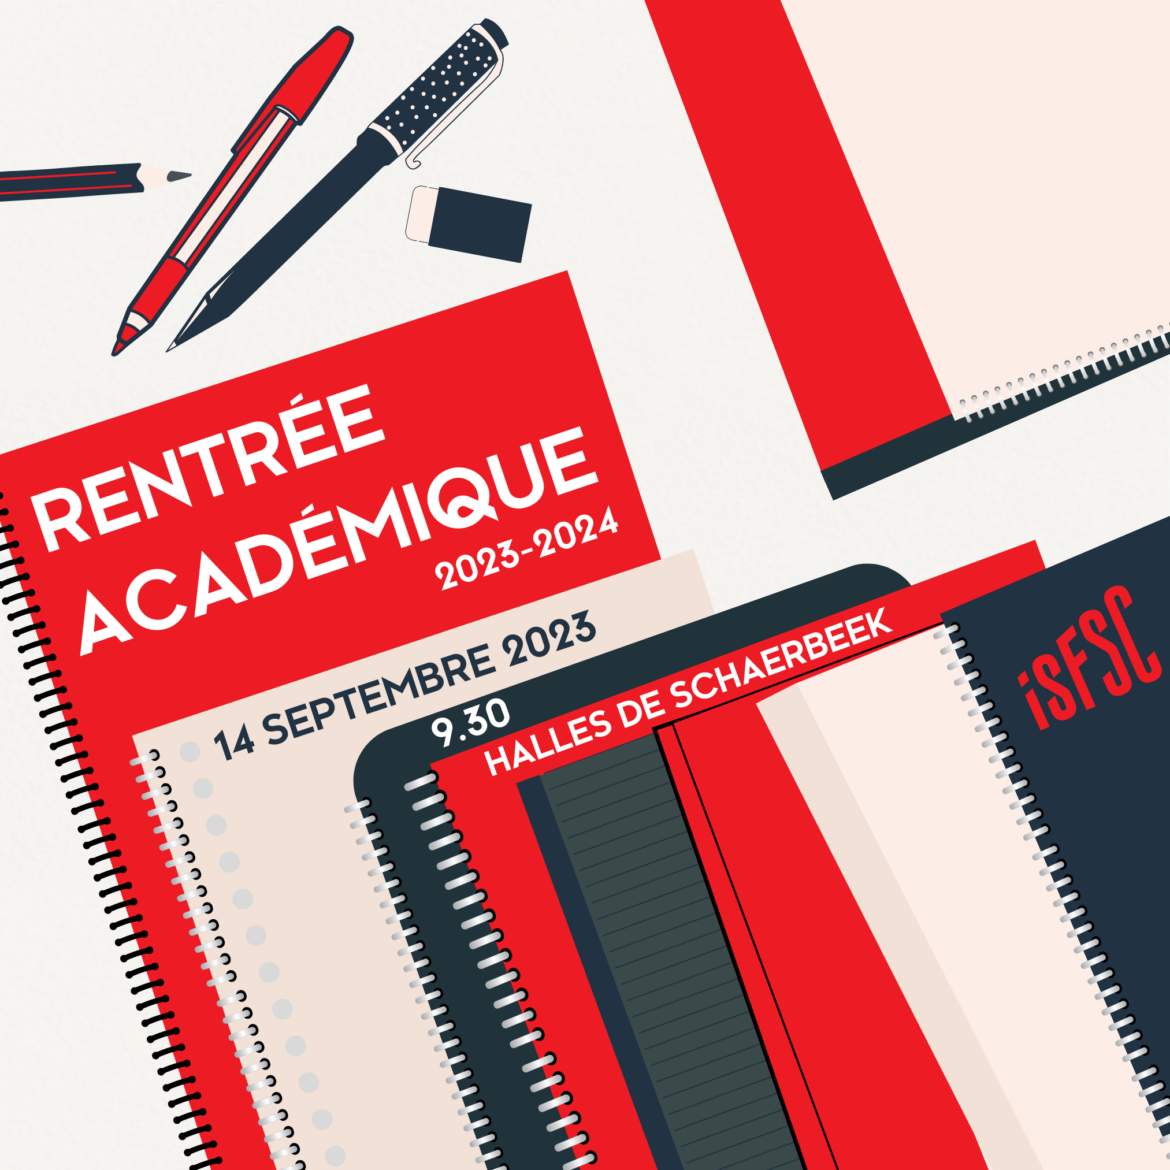 Rentree-academique-2023-2024.png